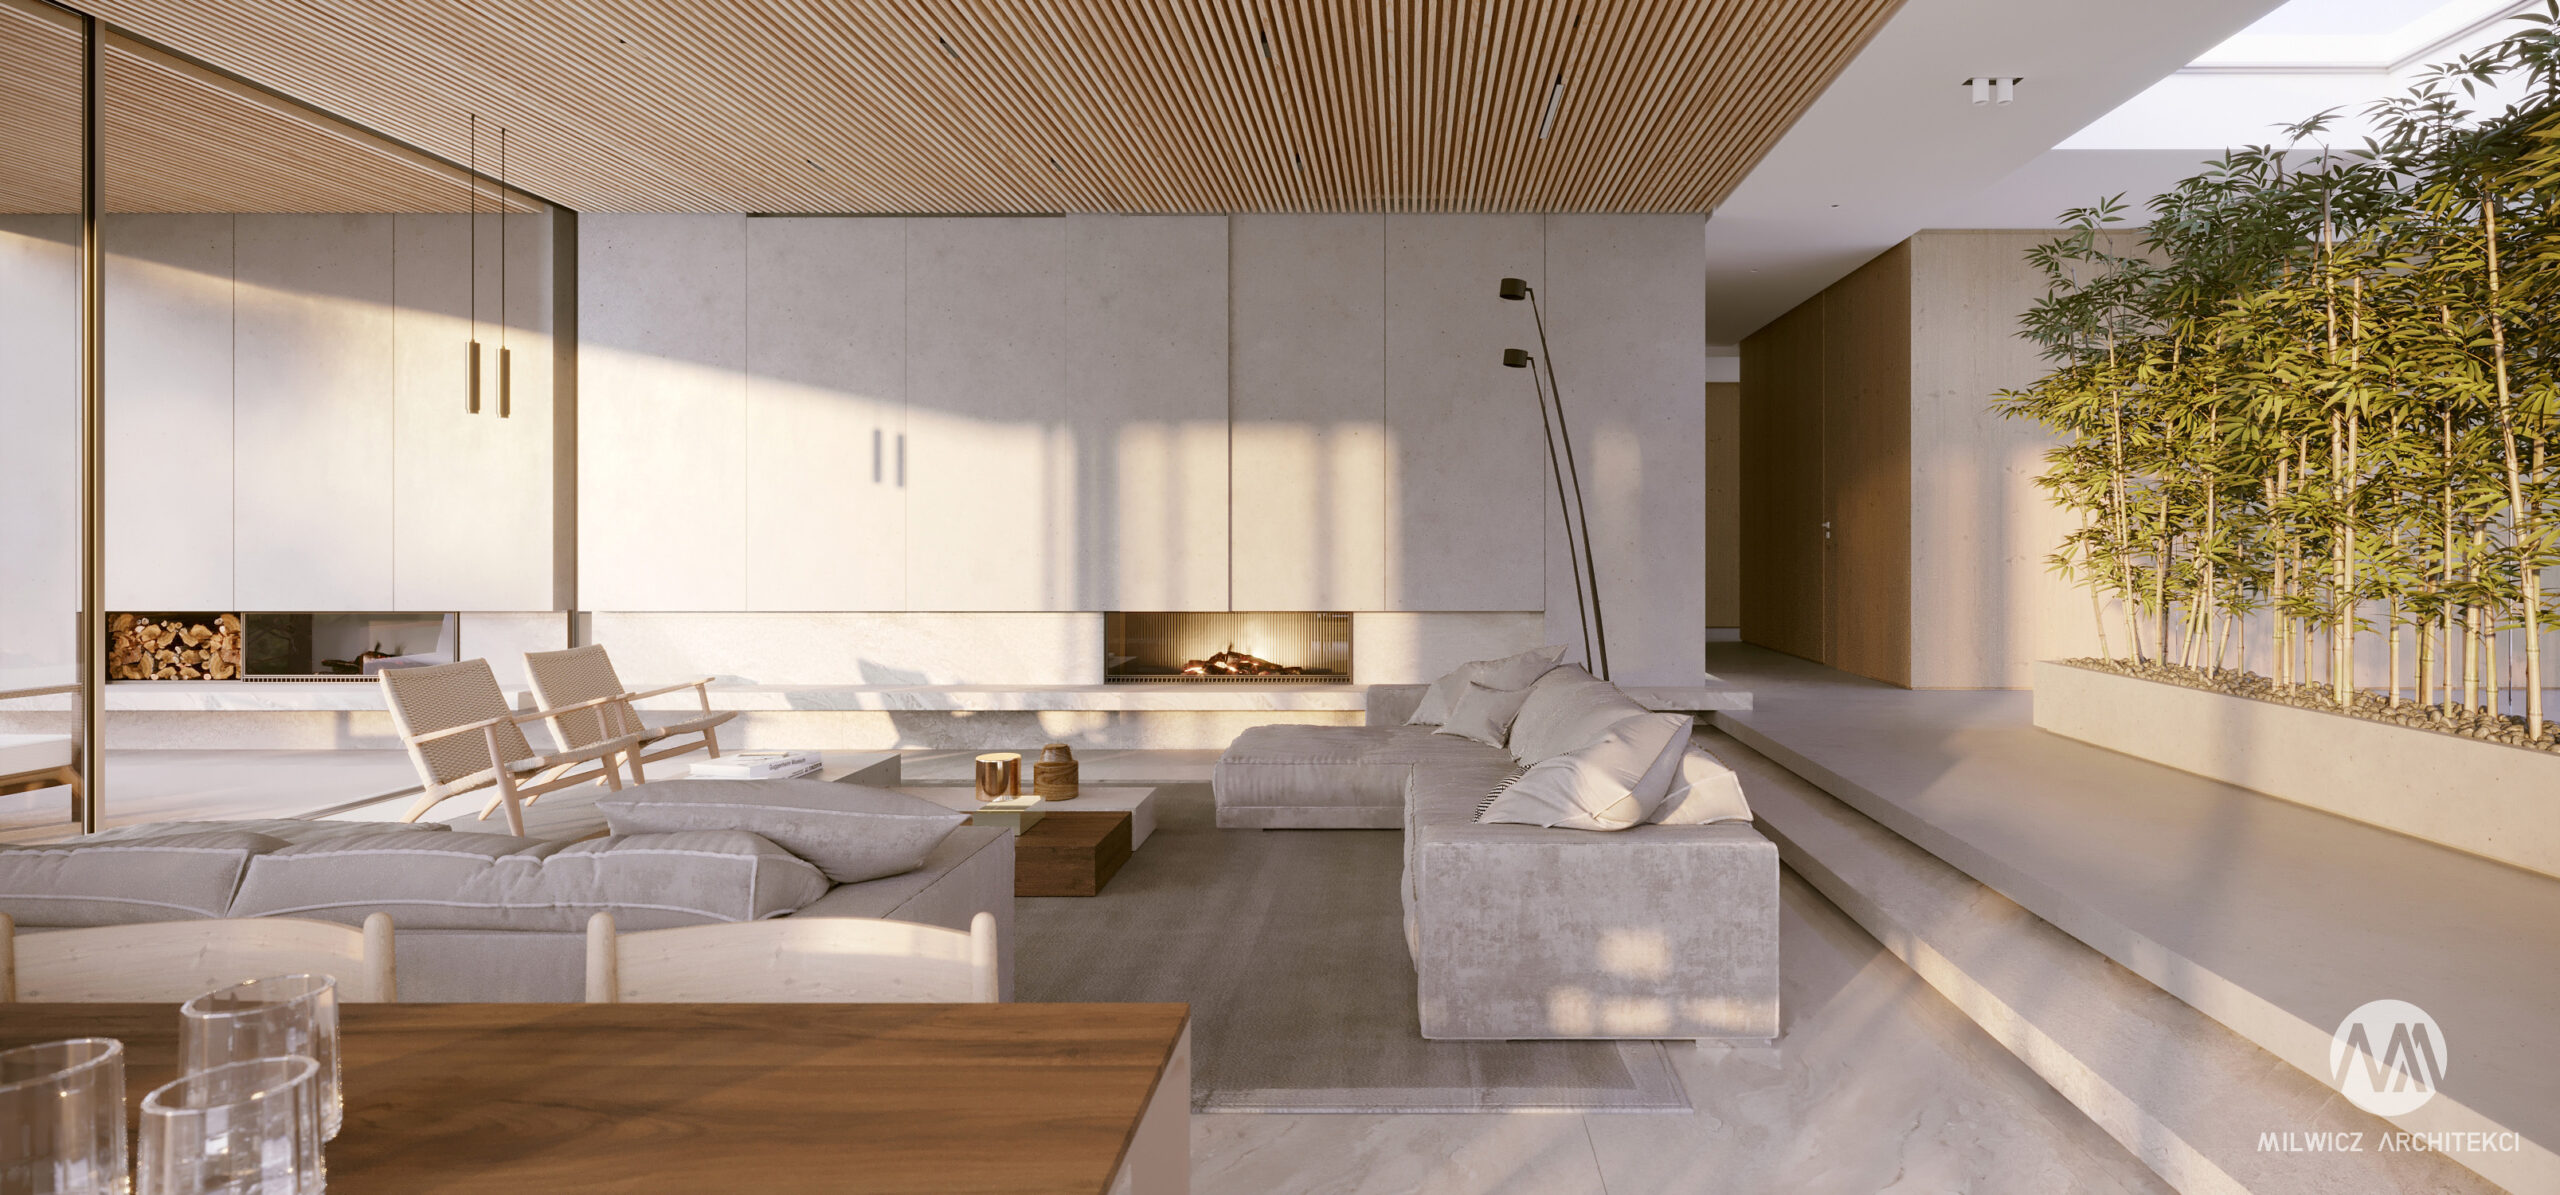 Dom na Wzgórzu minimalistyczny salon projekt wnętrz